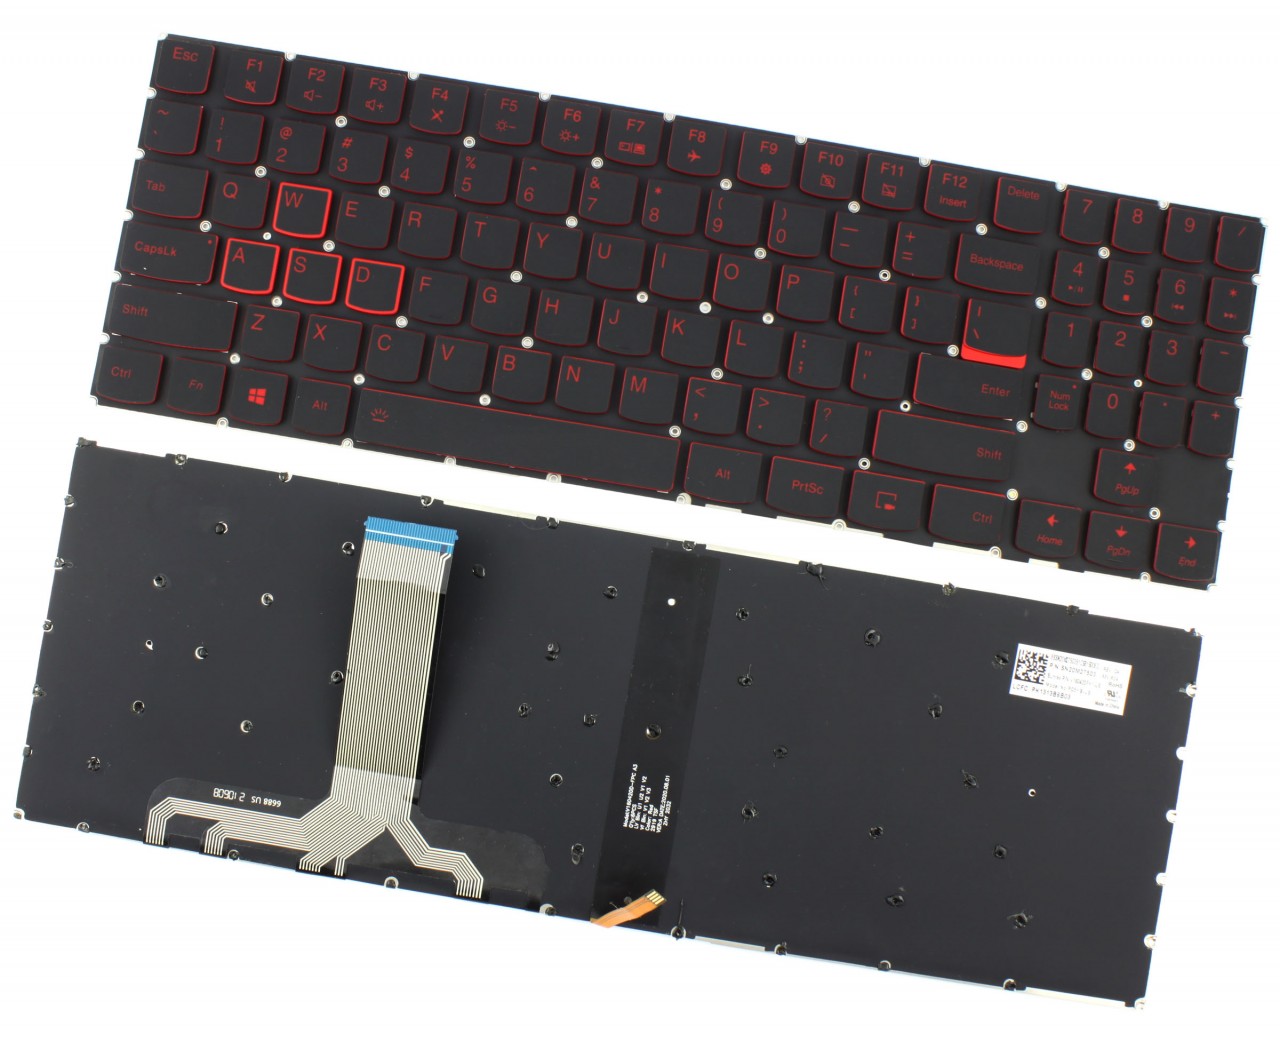 Tastatura Lenovo PK131386803 red color llumination backlit keys image10